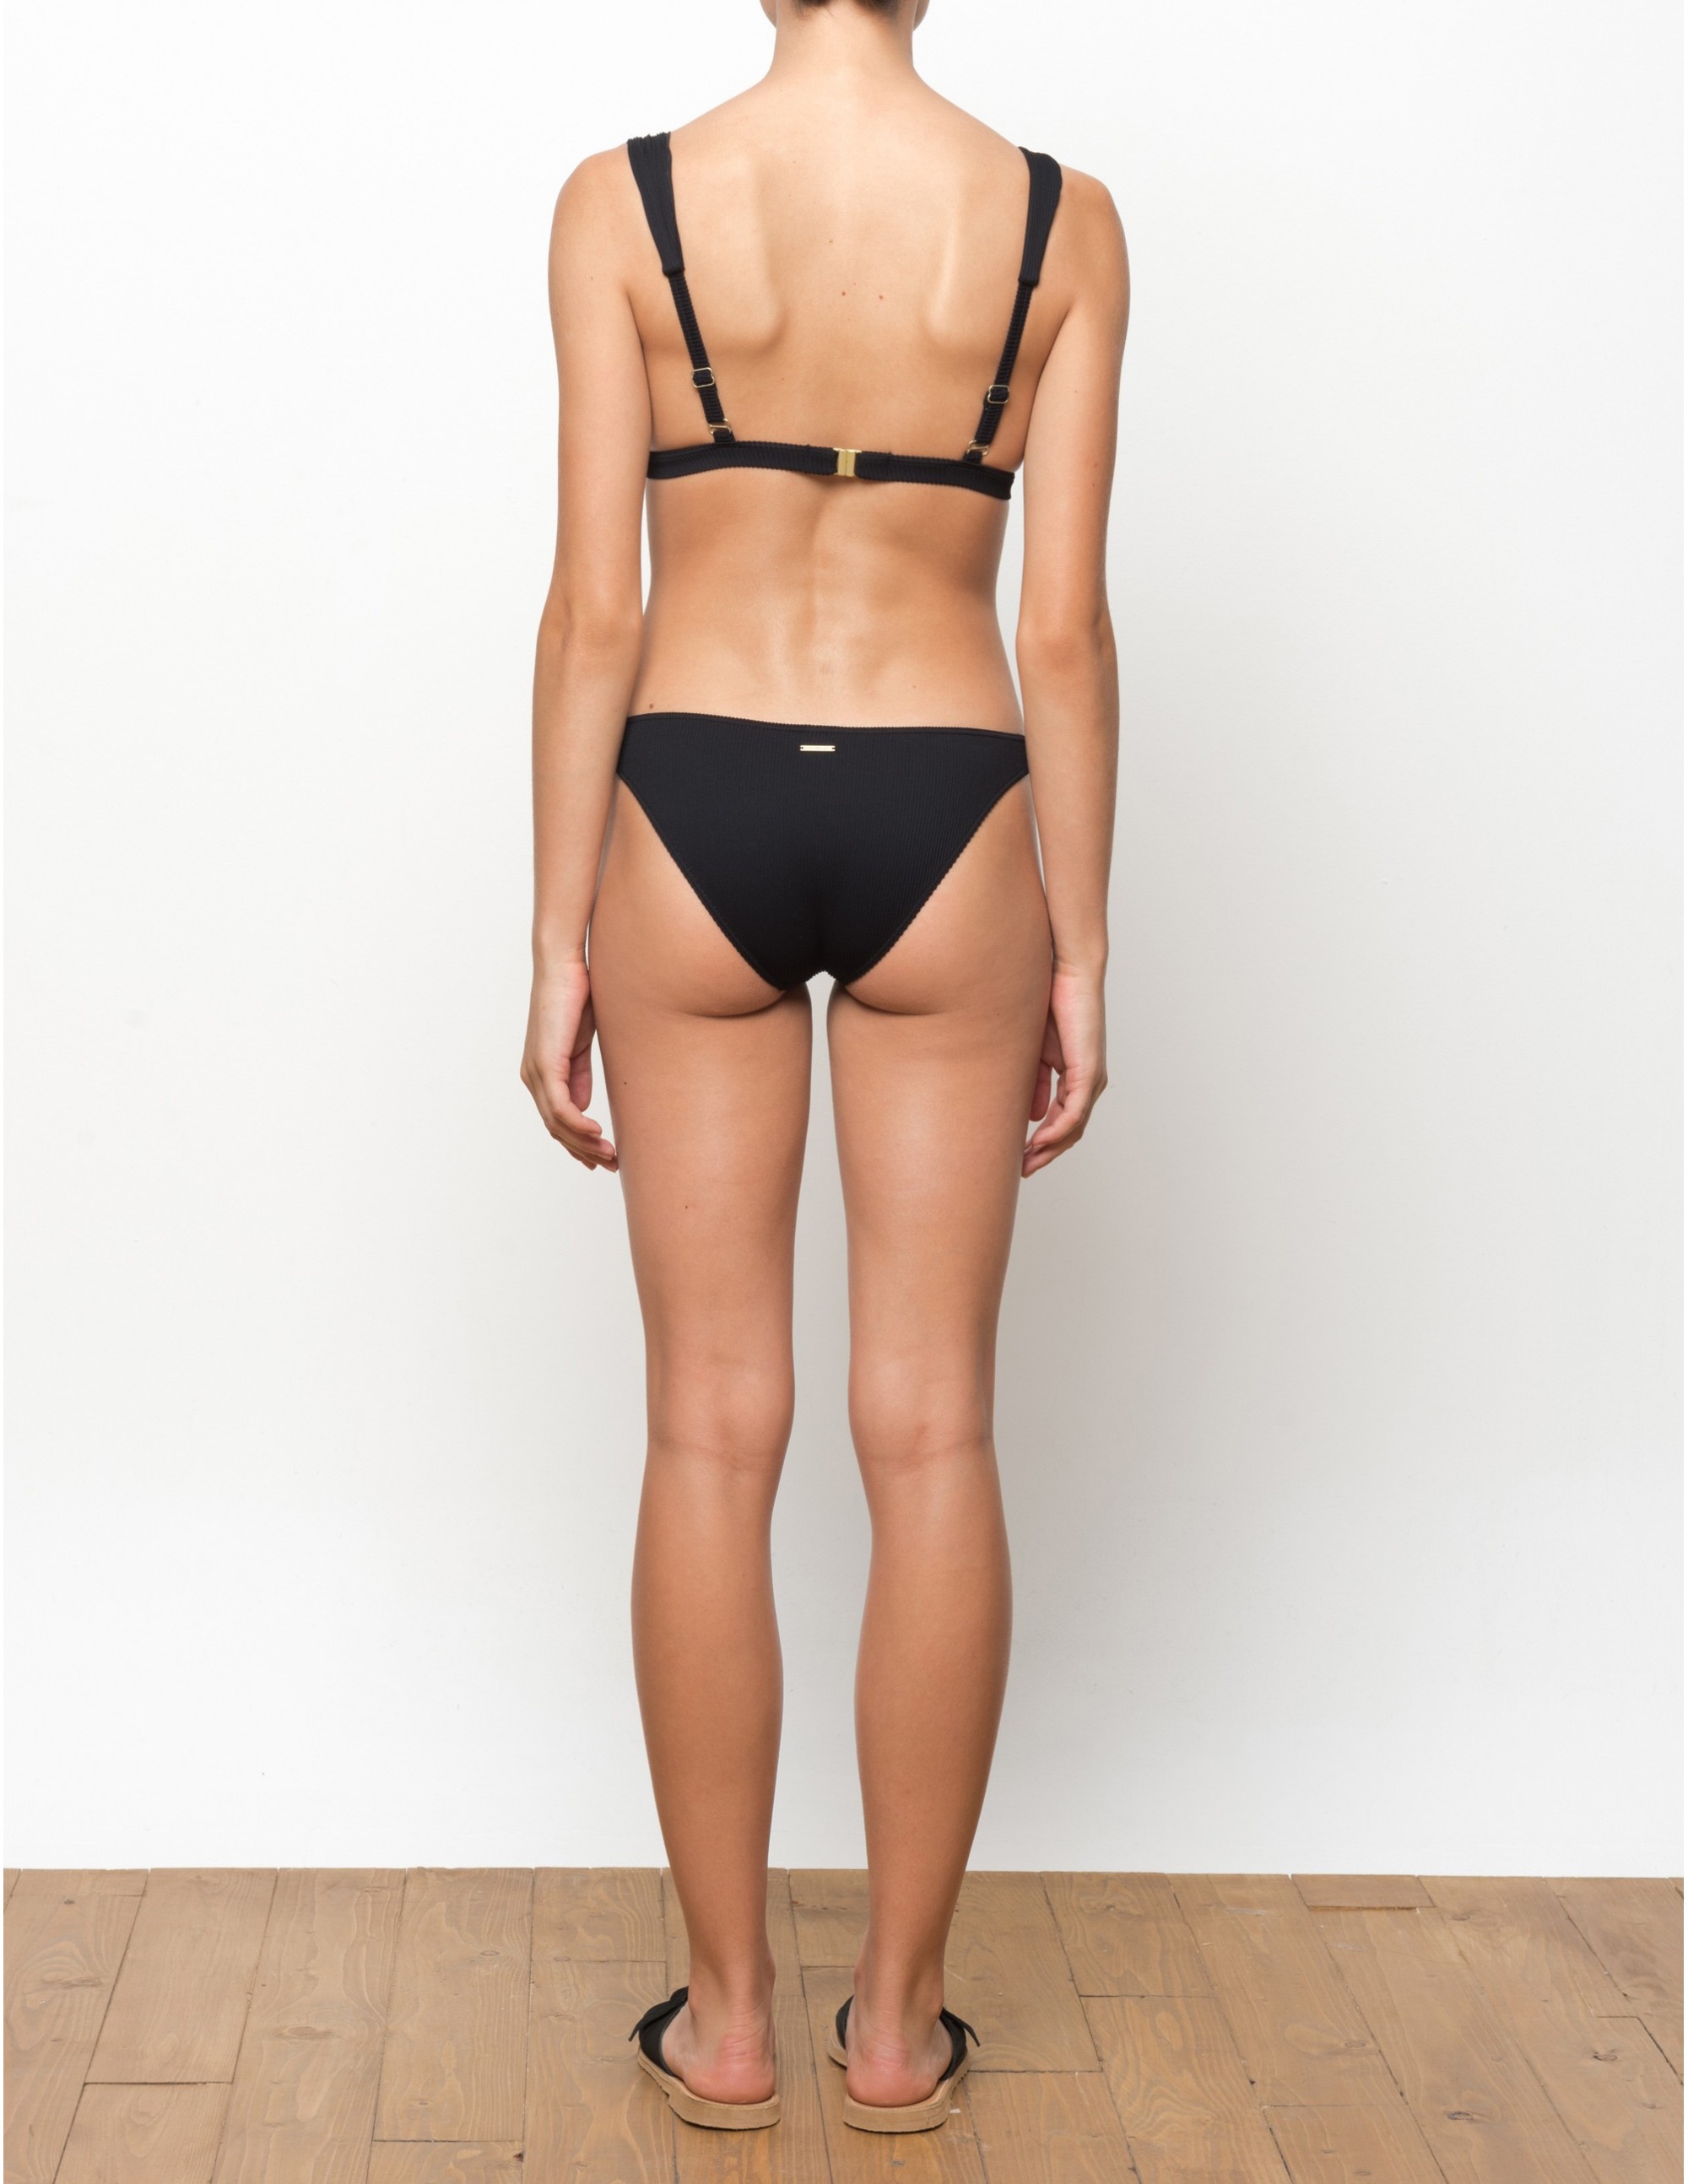 VUMA bikini bottom - PANTHER